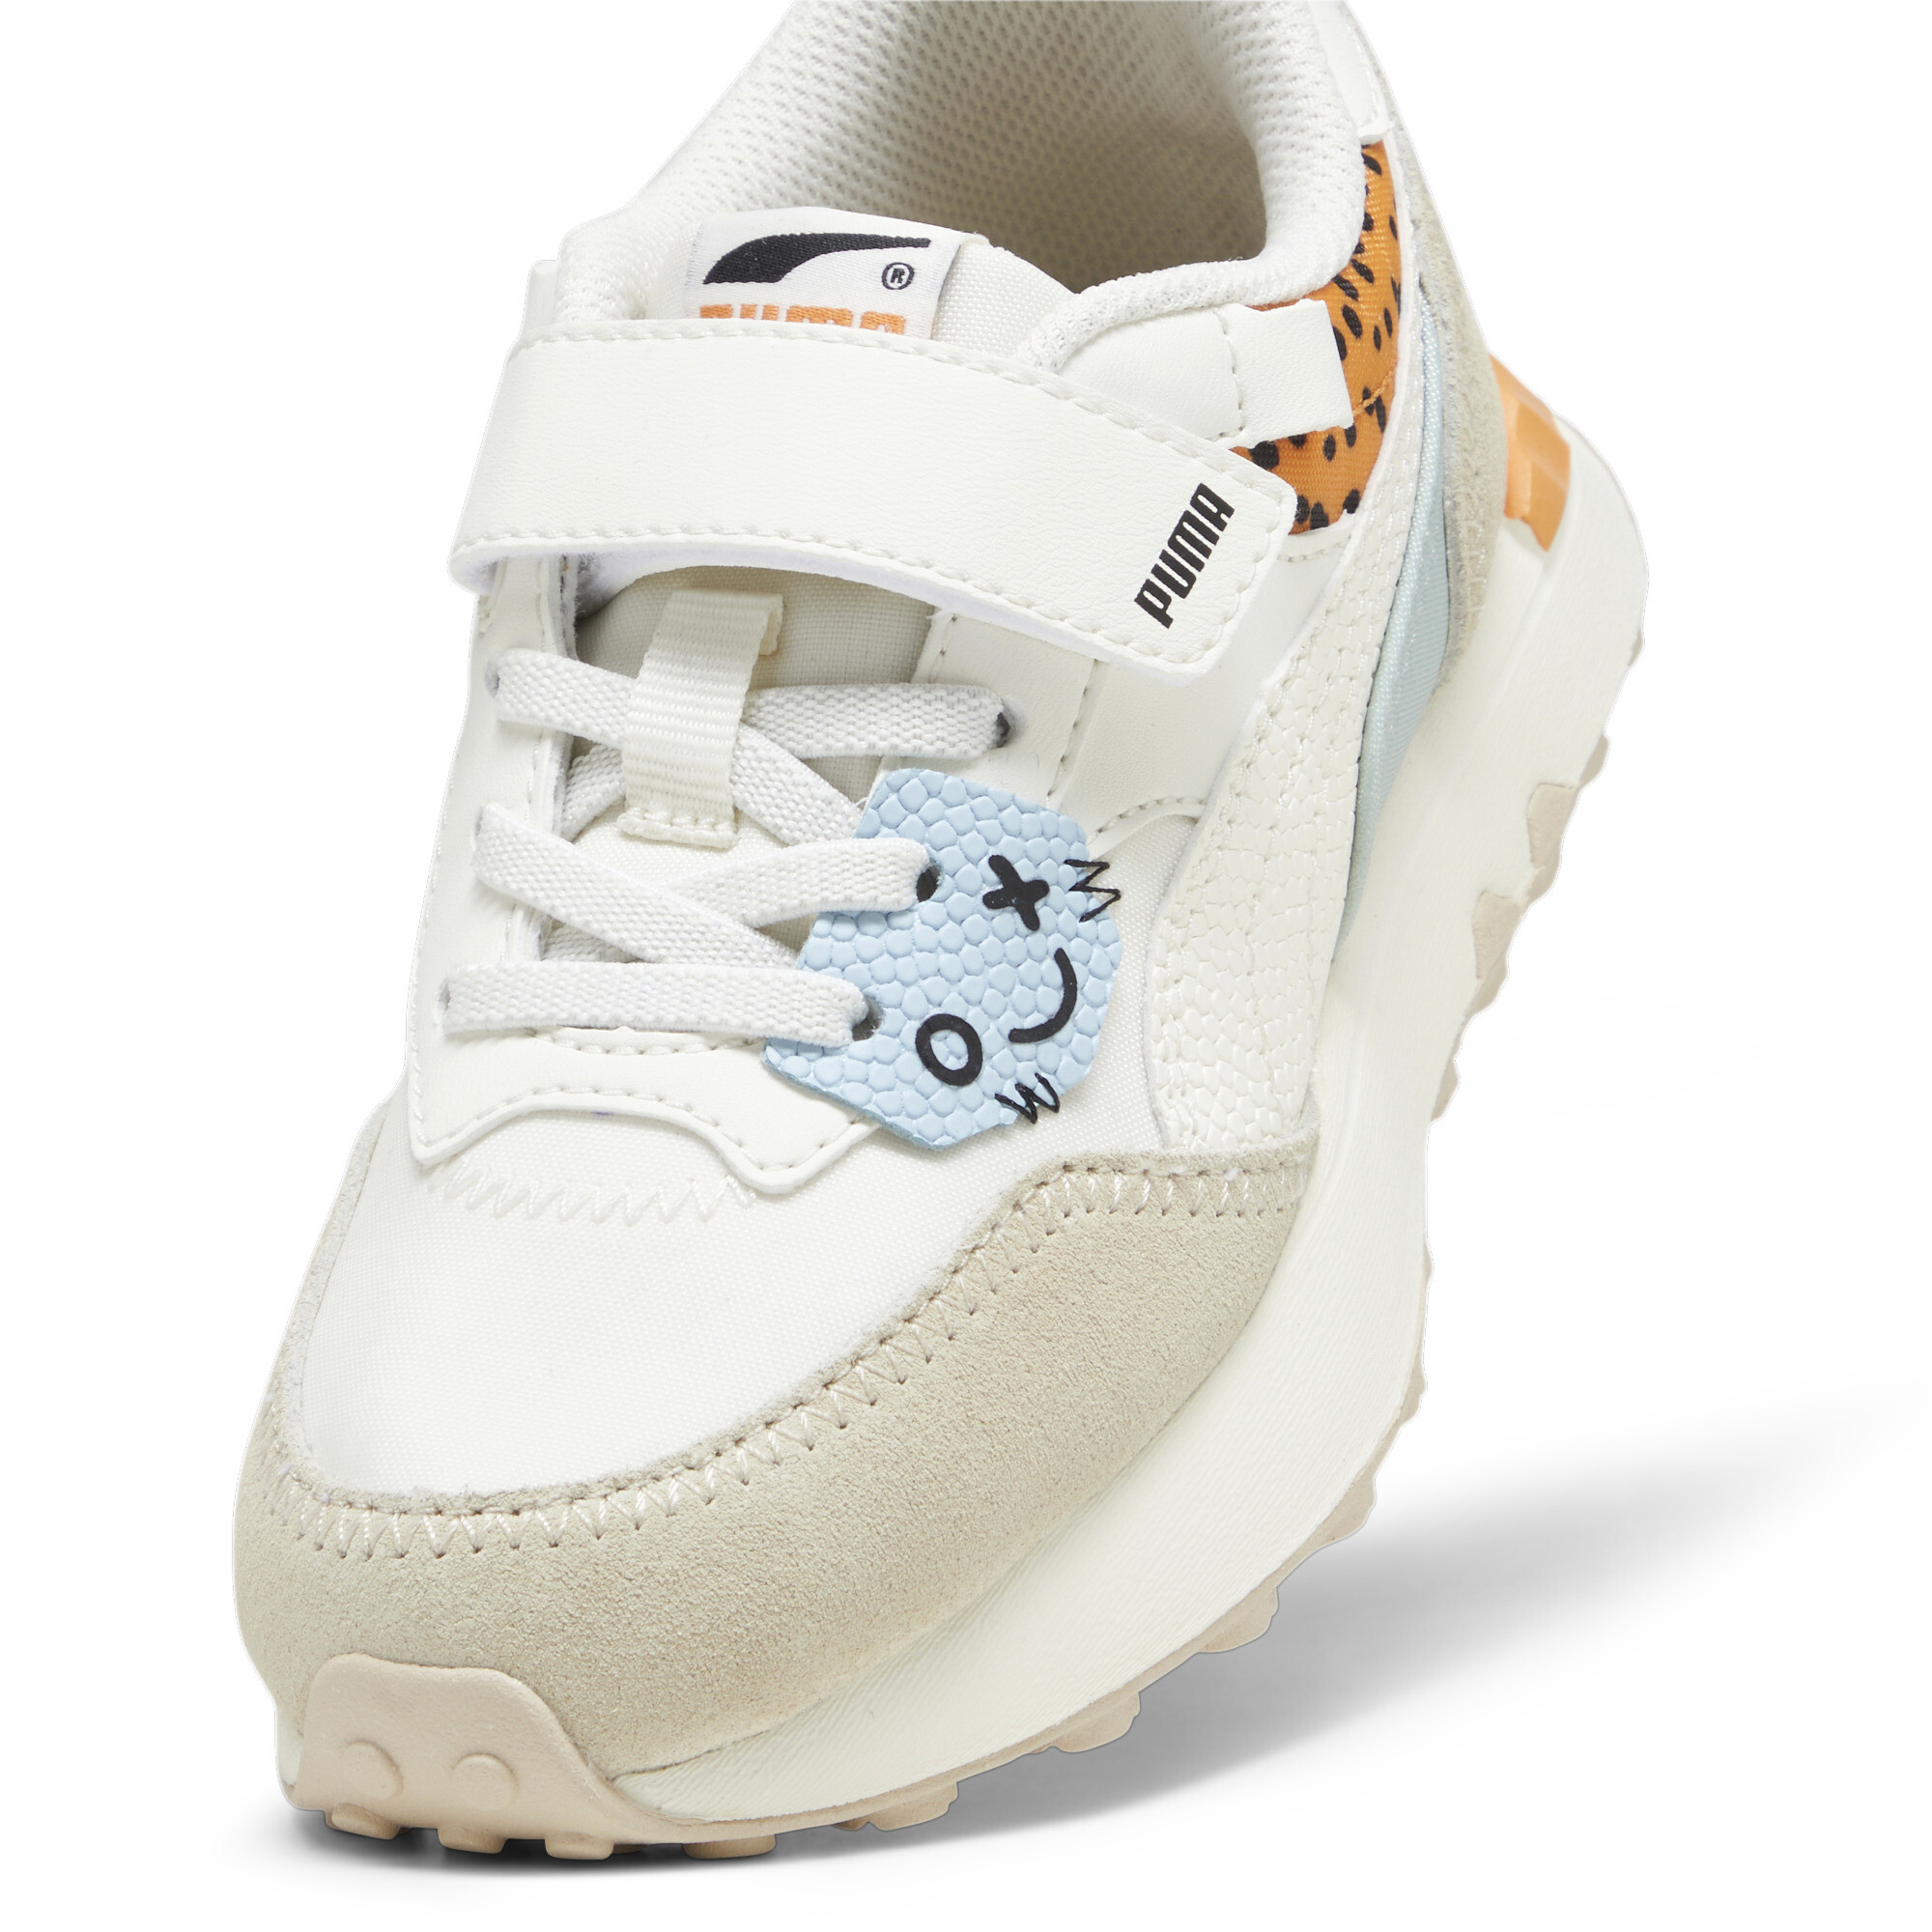 Kids' PUMA Rider FV Mix Match Sneakers In White, Size EU 31